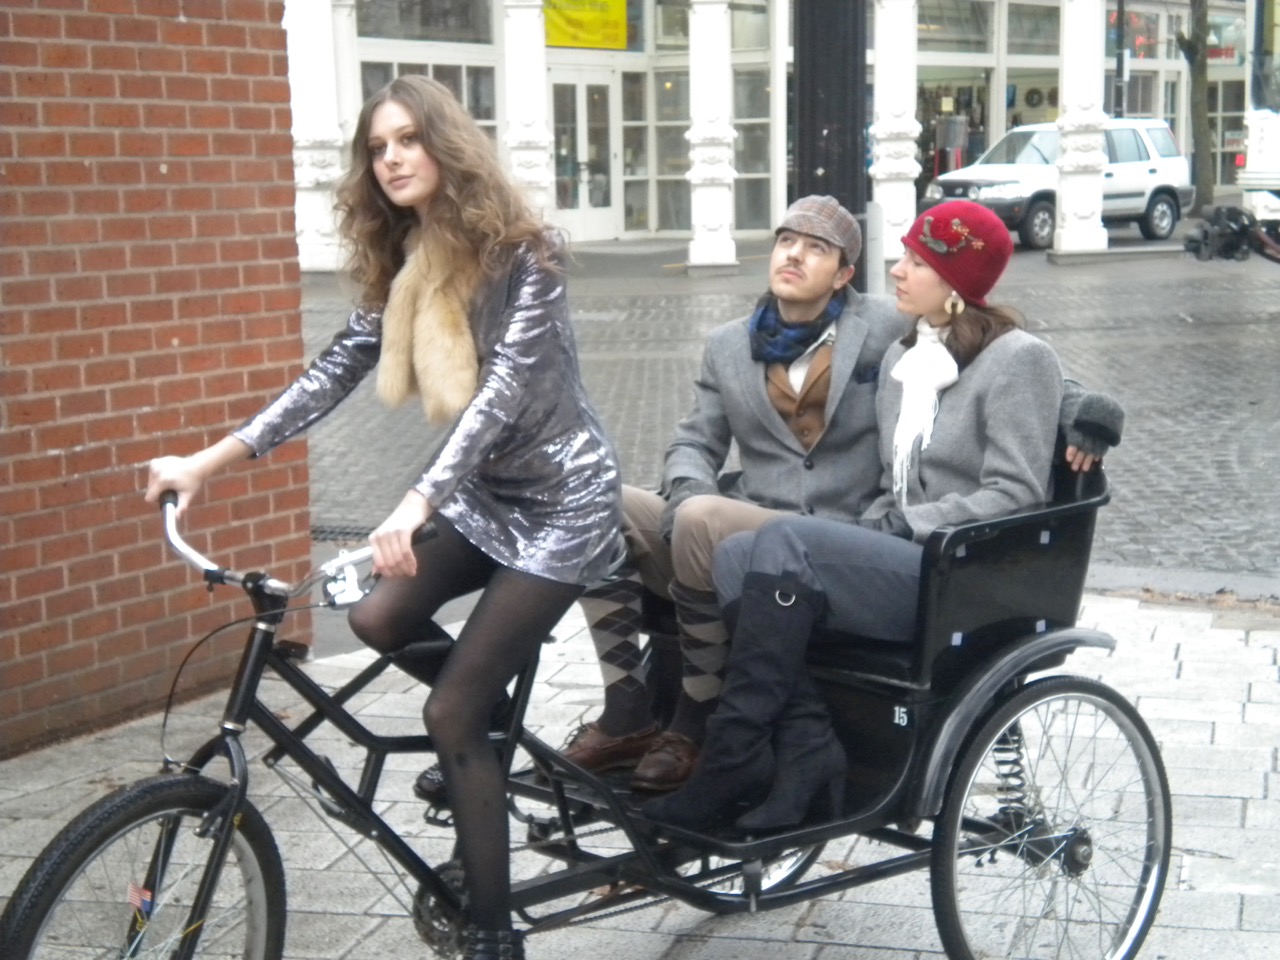 Tweedasuisilla on omia pyöräilypäiviä eri puolilla maailmaa Lontoossa, Tokiossa... Kuva Portlandista. Kuva: Foto: Sarah Mirk, flickr.com, CC BY 2.0